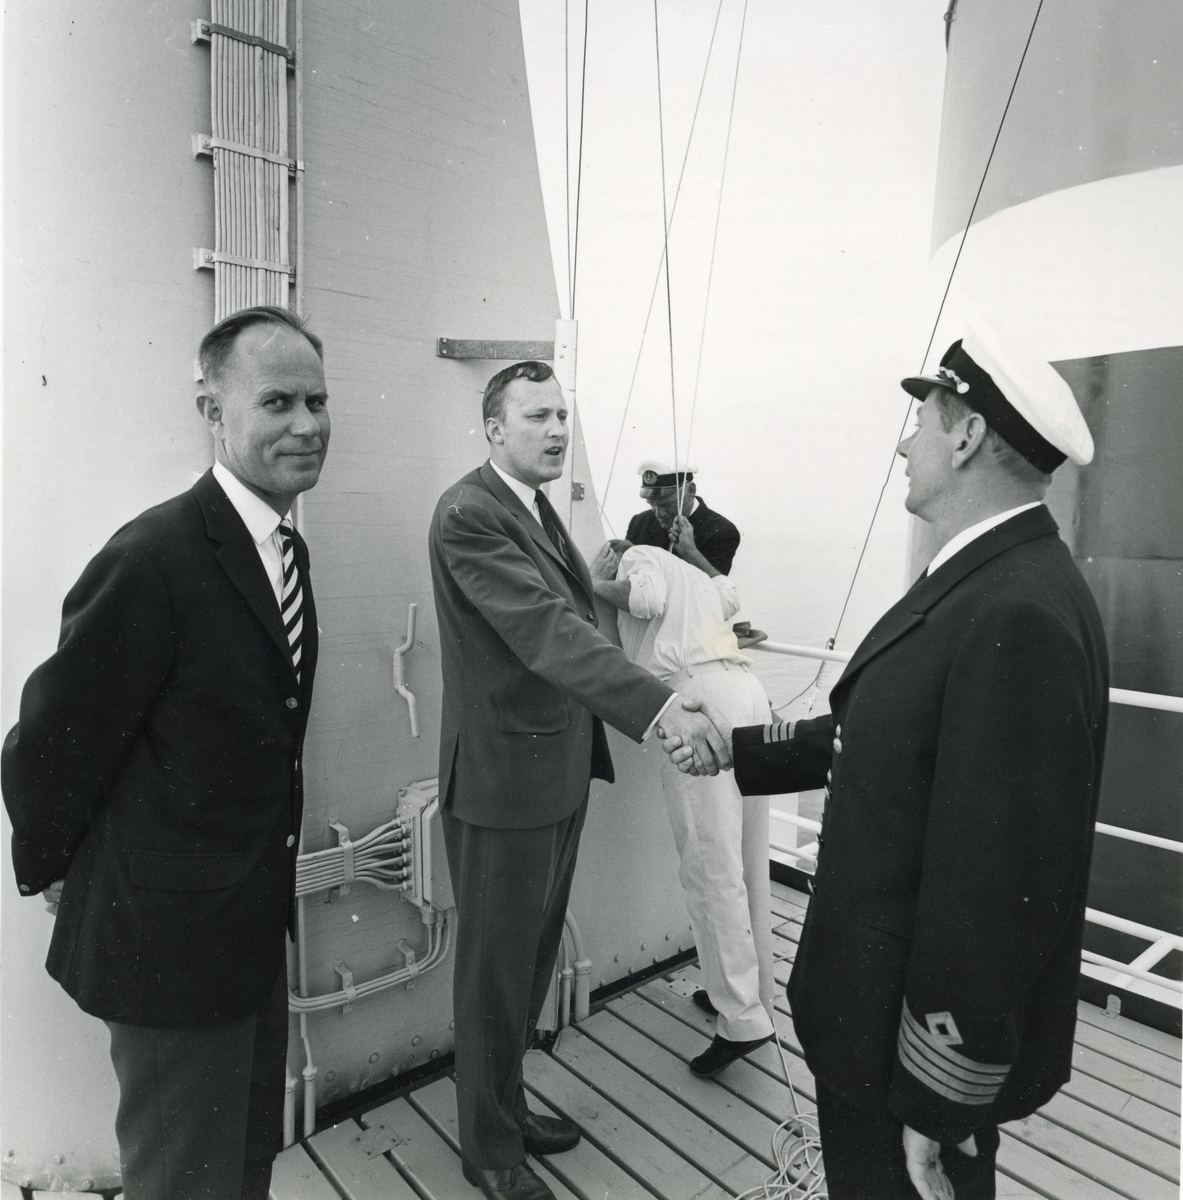 Dåp av M/S Besna (Ex. Etnefjell/ex. Olav Ringdal jr., ex. Olavv)(b.1950, Eriksbergs mek. Verkstads A/B, Göteborg) 1969.  
Kapteinen hilser på gjester ombord